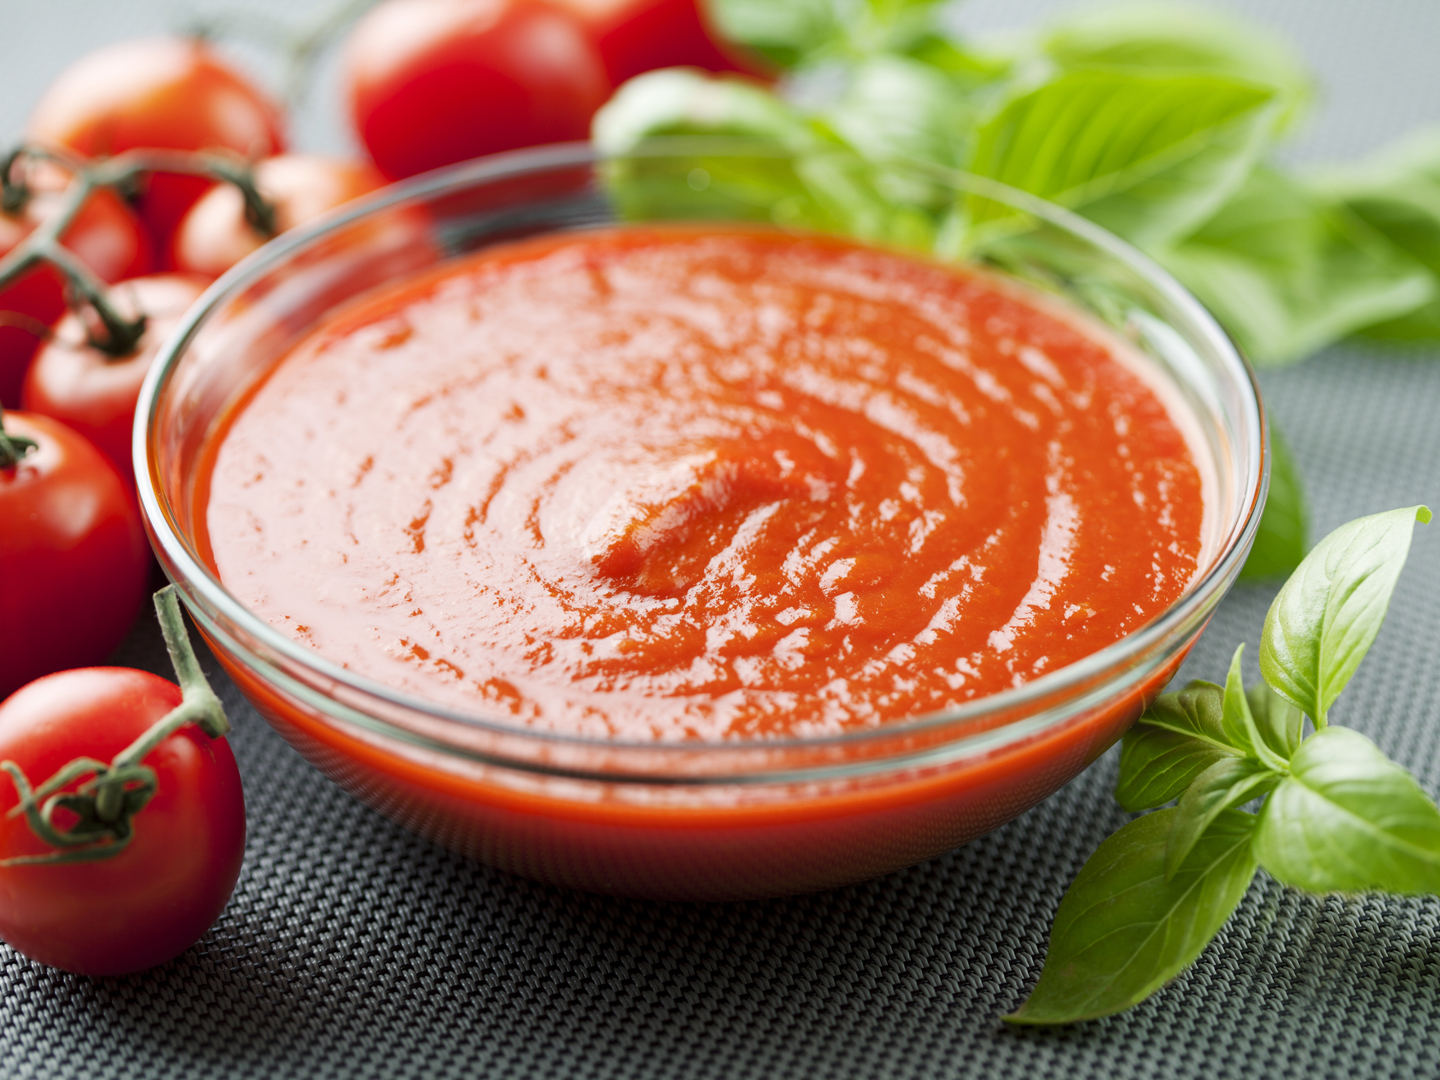 True Food Kitchen Tomato Sauce Dr. Weil's Healthy Kitchen